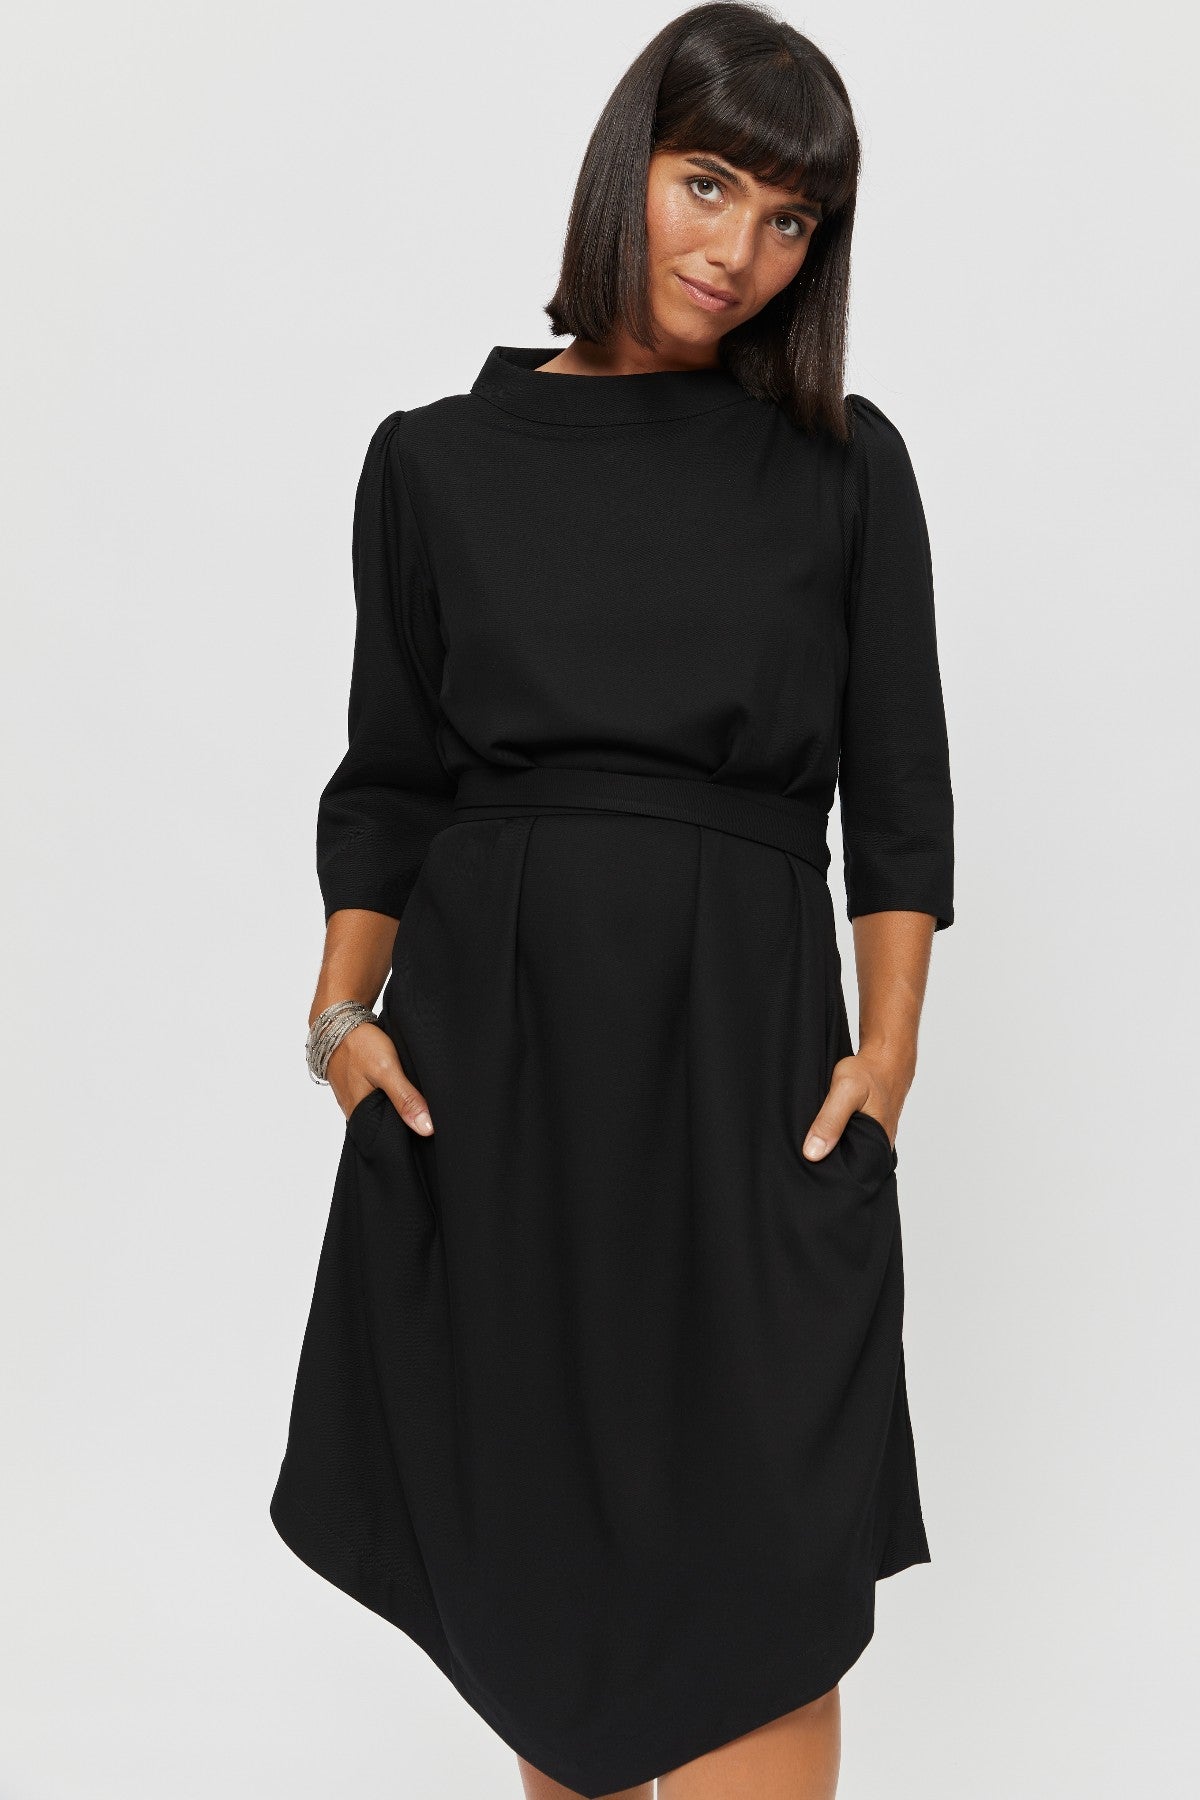 Suzi | Kleid mit Bootsausschnitt und Gürtel in Schwarz